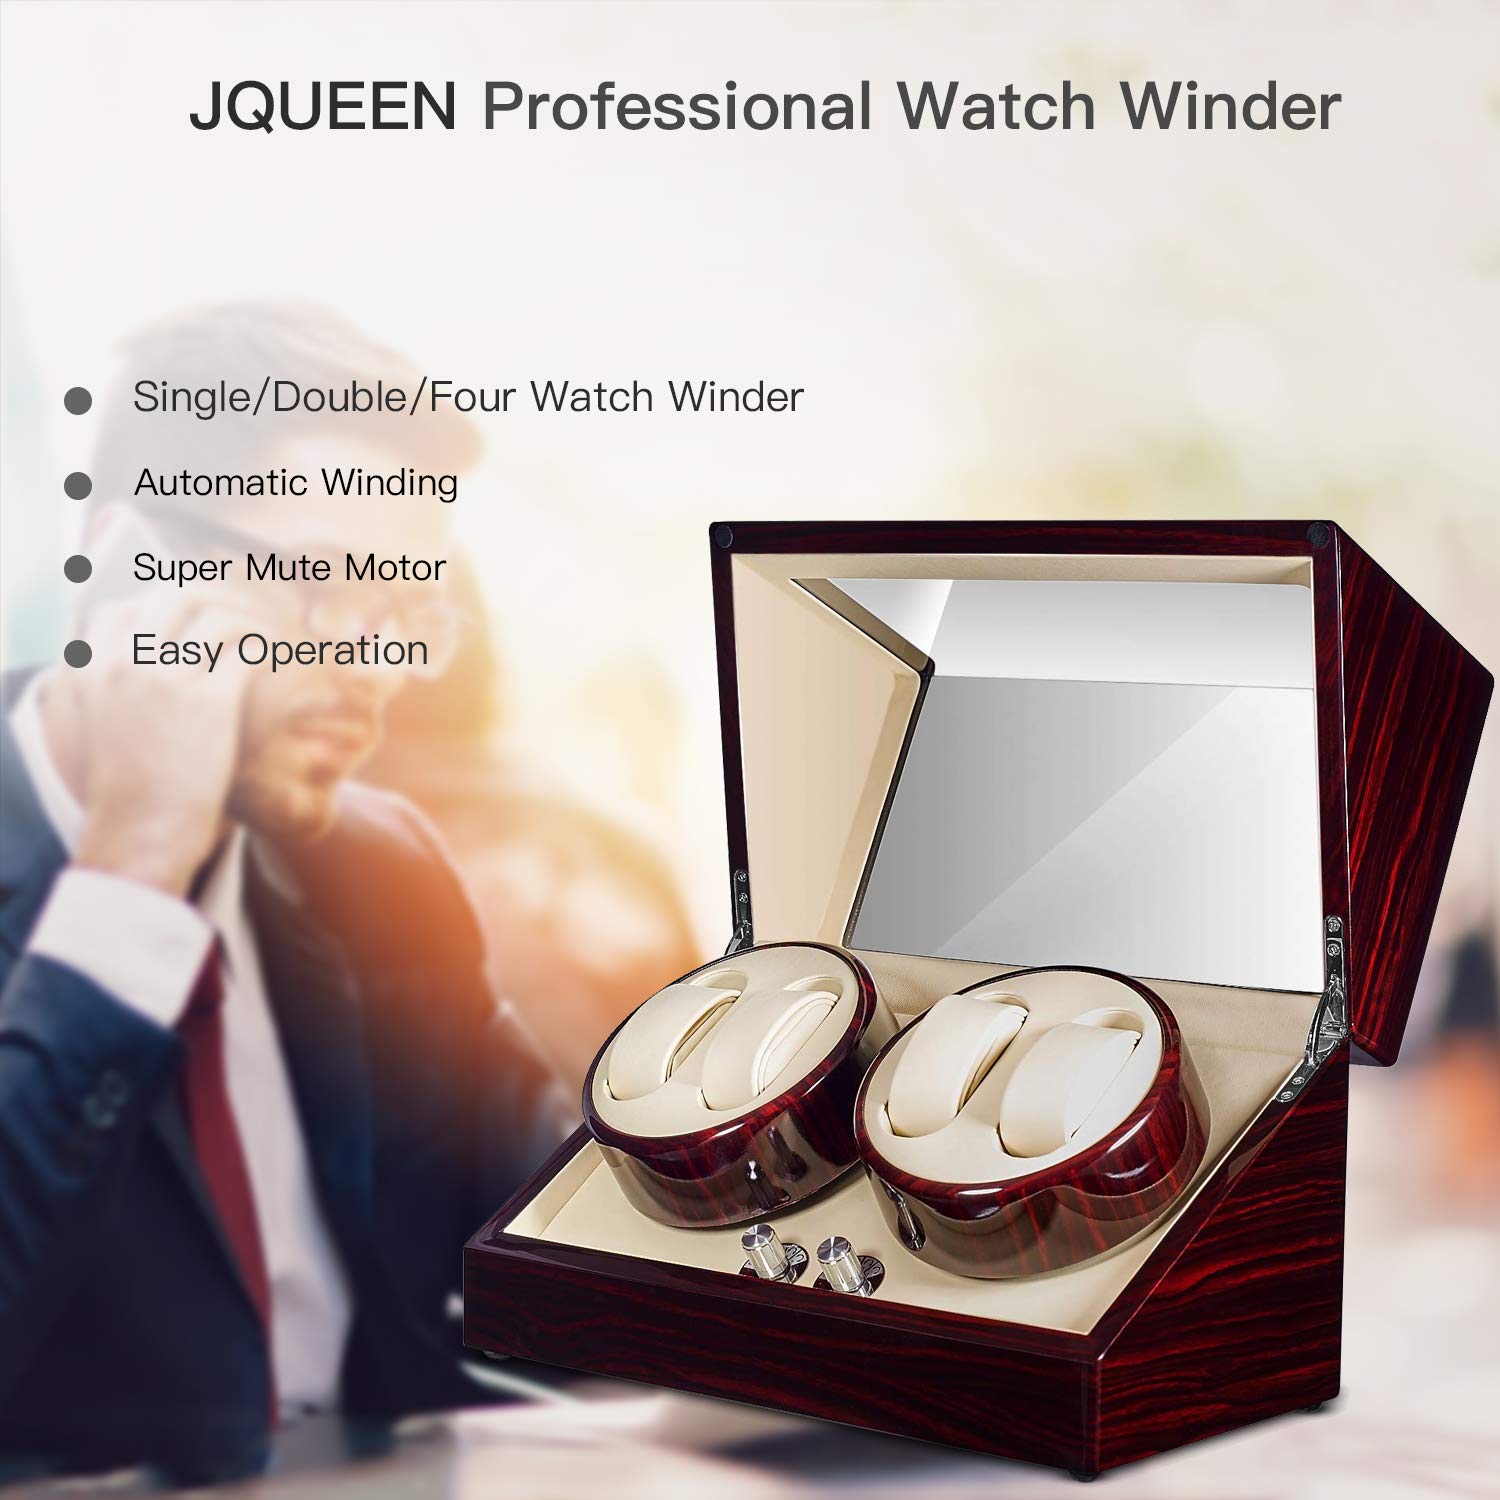 JQUEEN Watch Winder with Quiet Motors